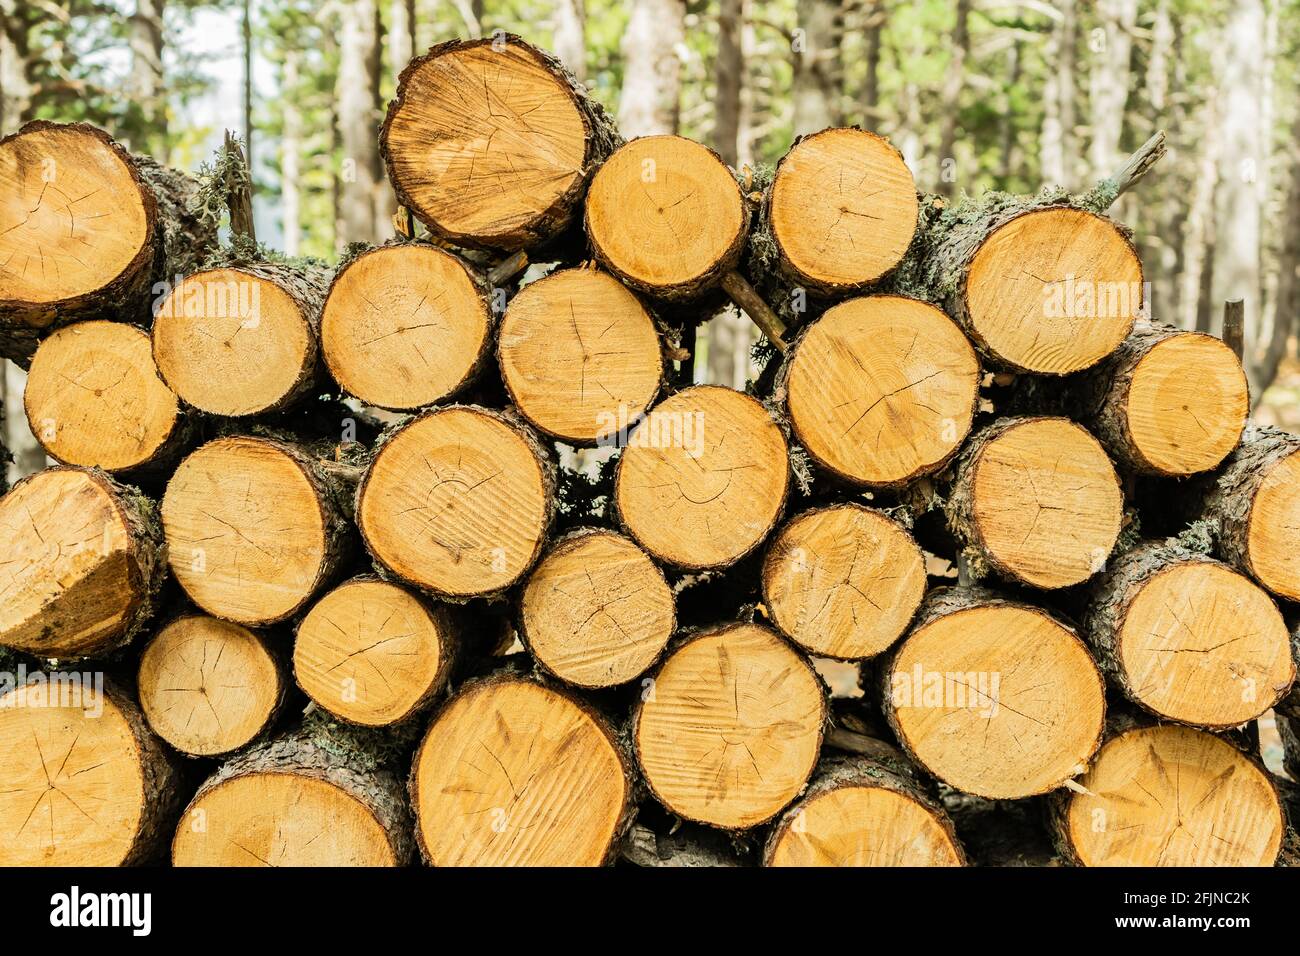 Sự phong phú và độc đáo trong hình ảnh các thân cây gỗ sẽ kích thích trí tò mò của bạn. Mỗi mảnh gỗ đều có một hình dáng riêng biệt, mang lại sự mới lạ và độc đáo cho bức tranh tự nhiên này.